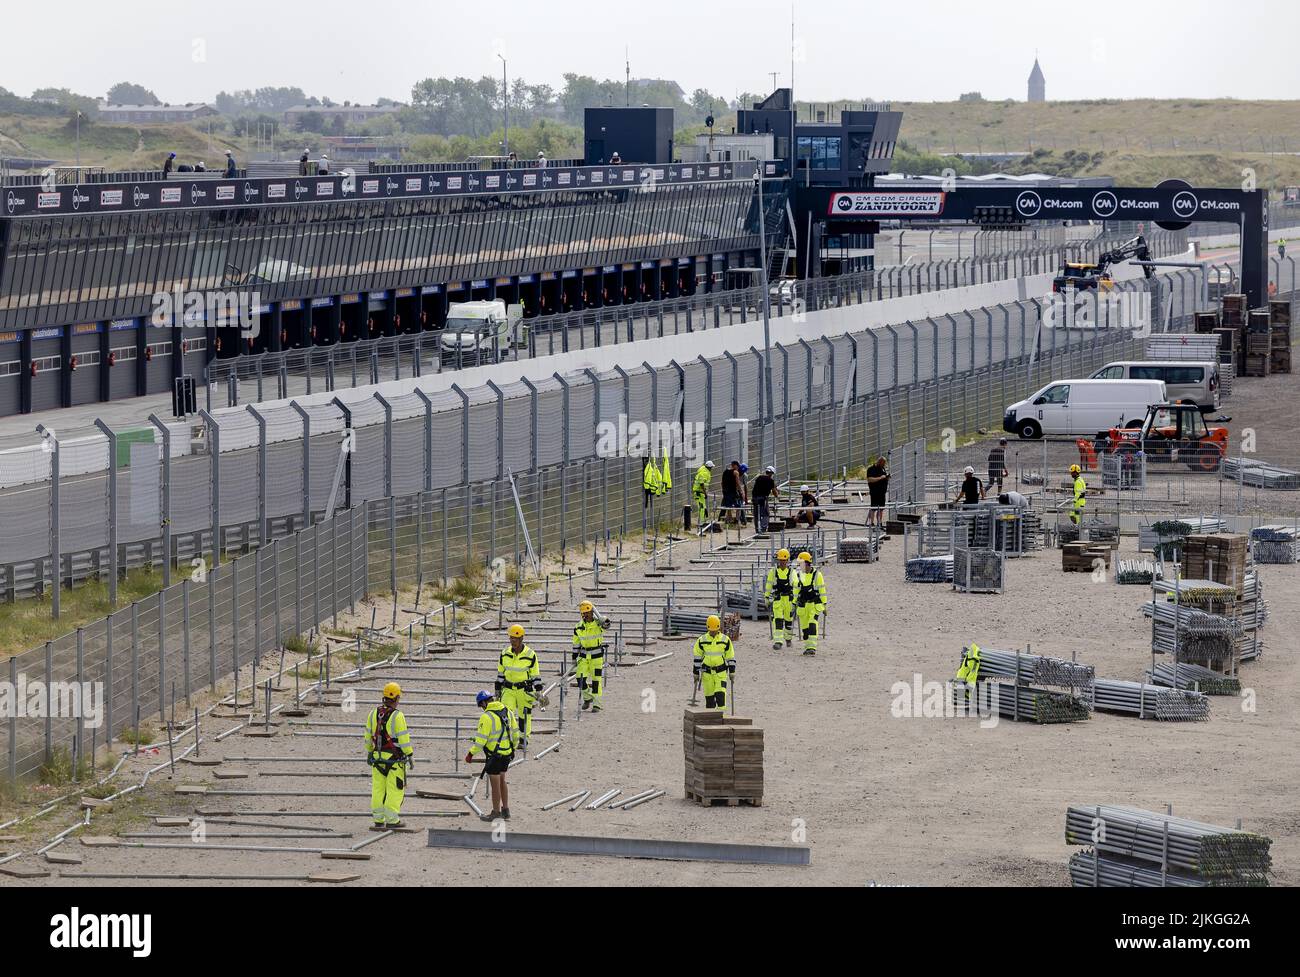 2022-08-02 14:29:26 ZANDVOORT - costruzione della tribuna sul circuito di Zandvoort nella corsa fino al Gran Premio Olandese che si terrà sul circuito all'inizio di settembre. ANP ROBIN VAN LONKHUIJSEN olanda OUT - belgio OUT Foto Stock